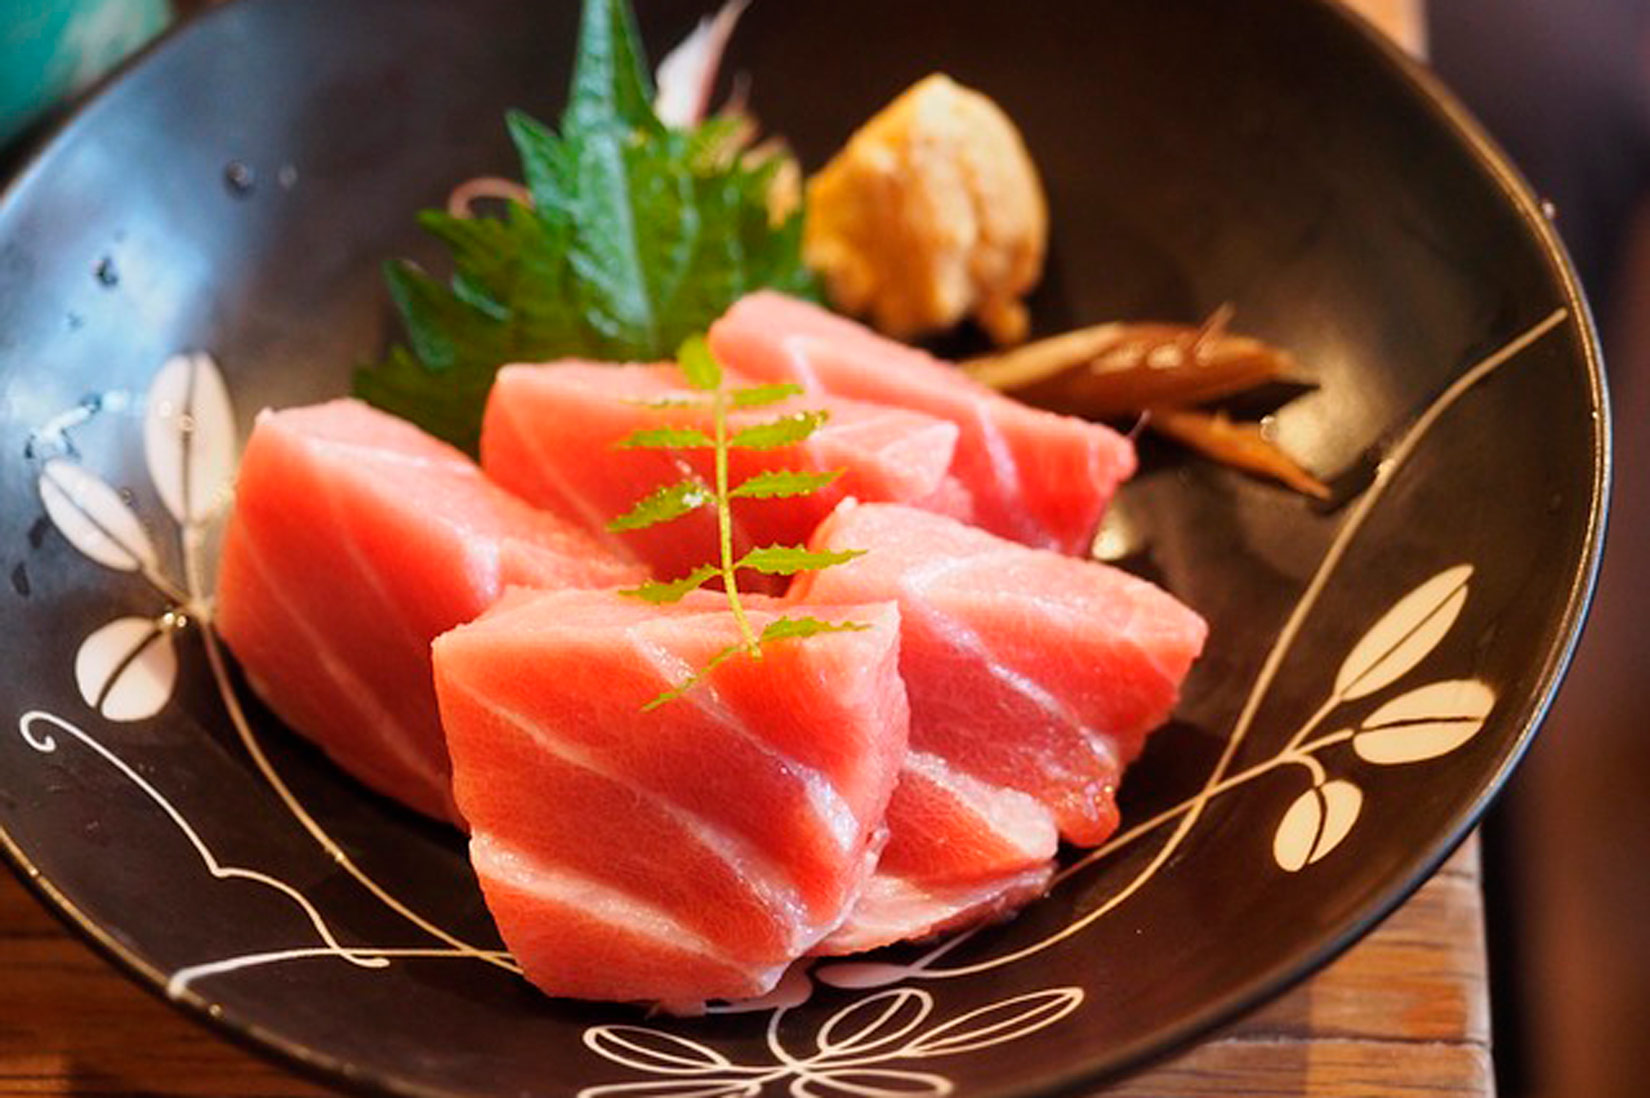 na slici se vidi tuna narezana na kocke, pet komada, poslužena u crnom tanjuru s bijelim motivom lišća.